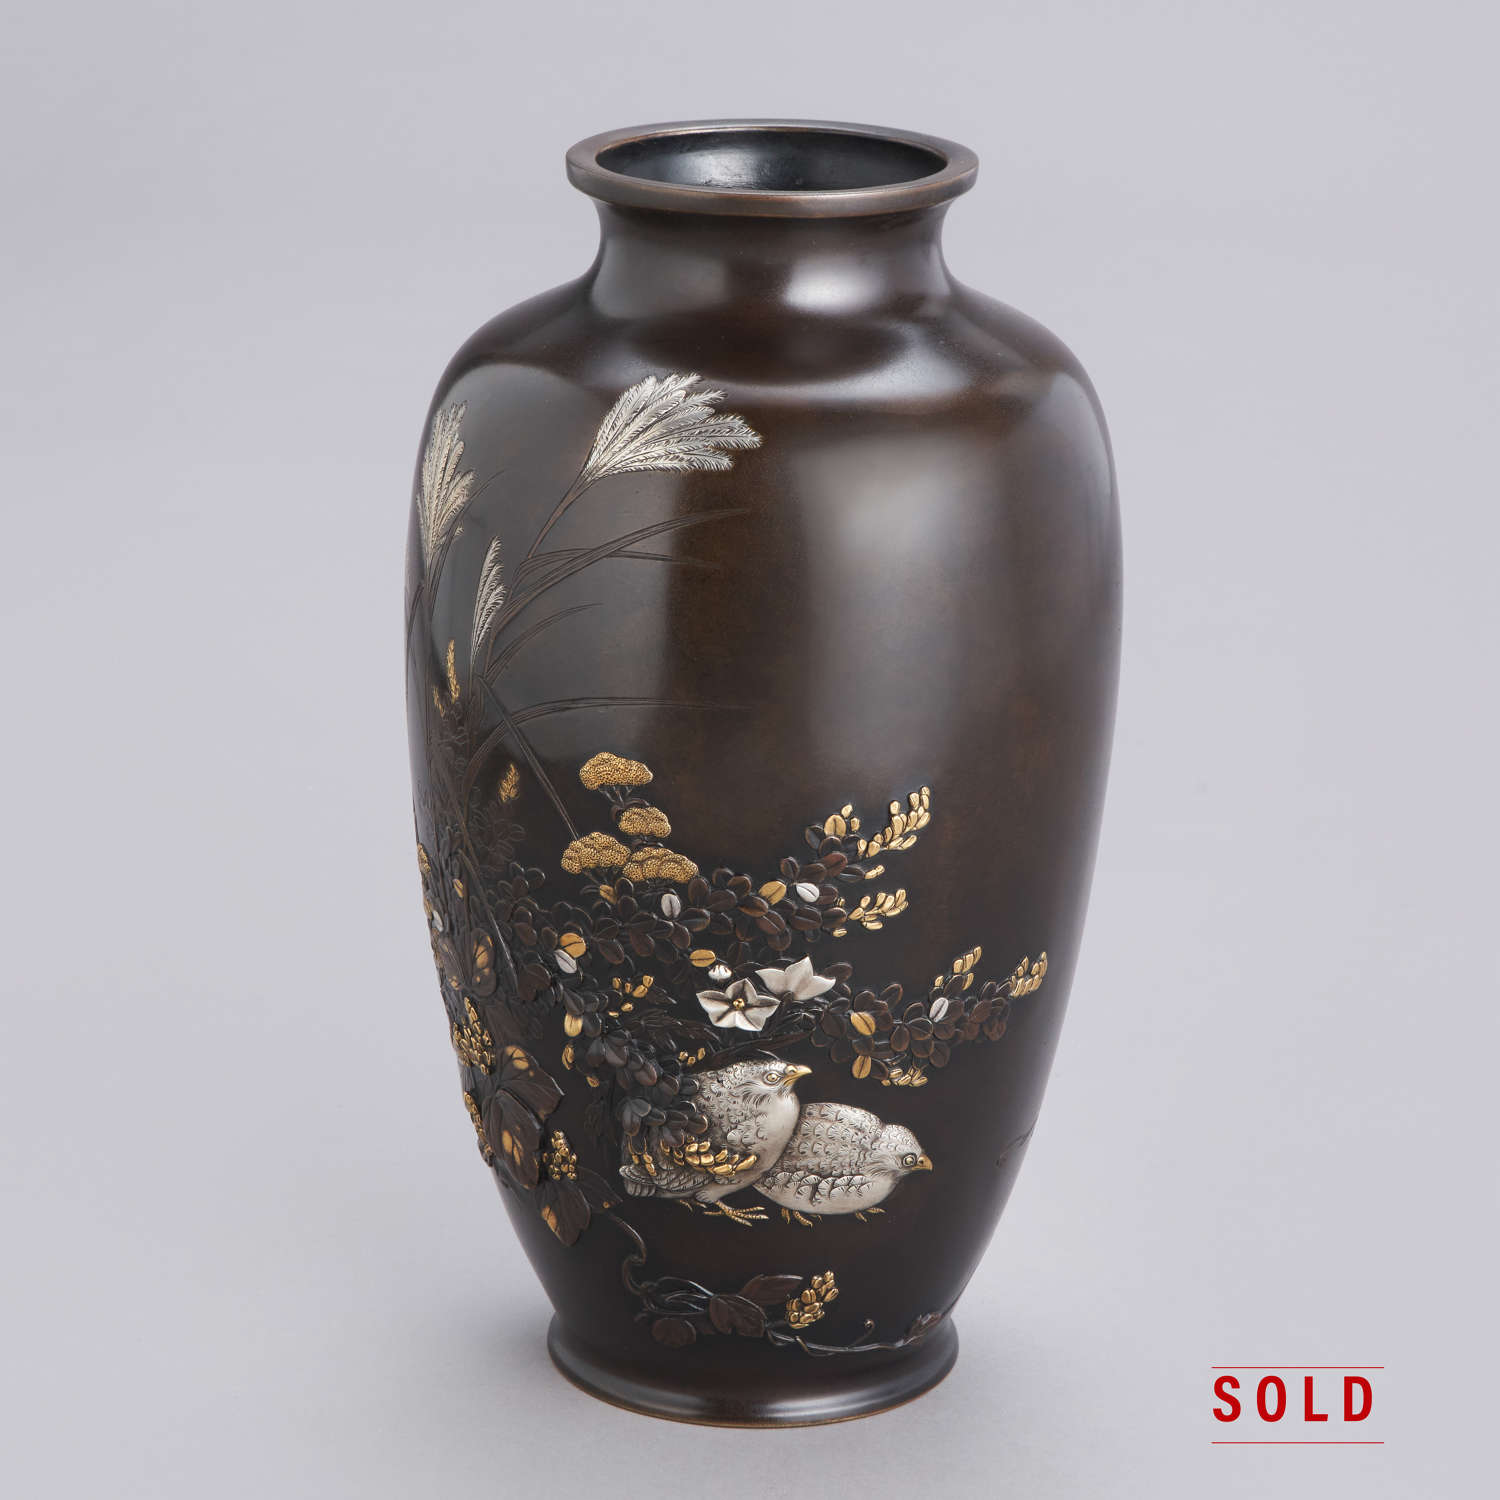 Japanese bronze vase with quails signed Joshin Shōwa period